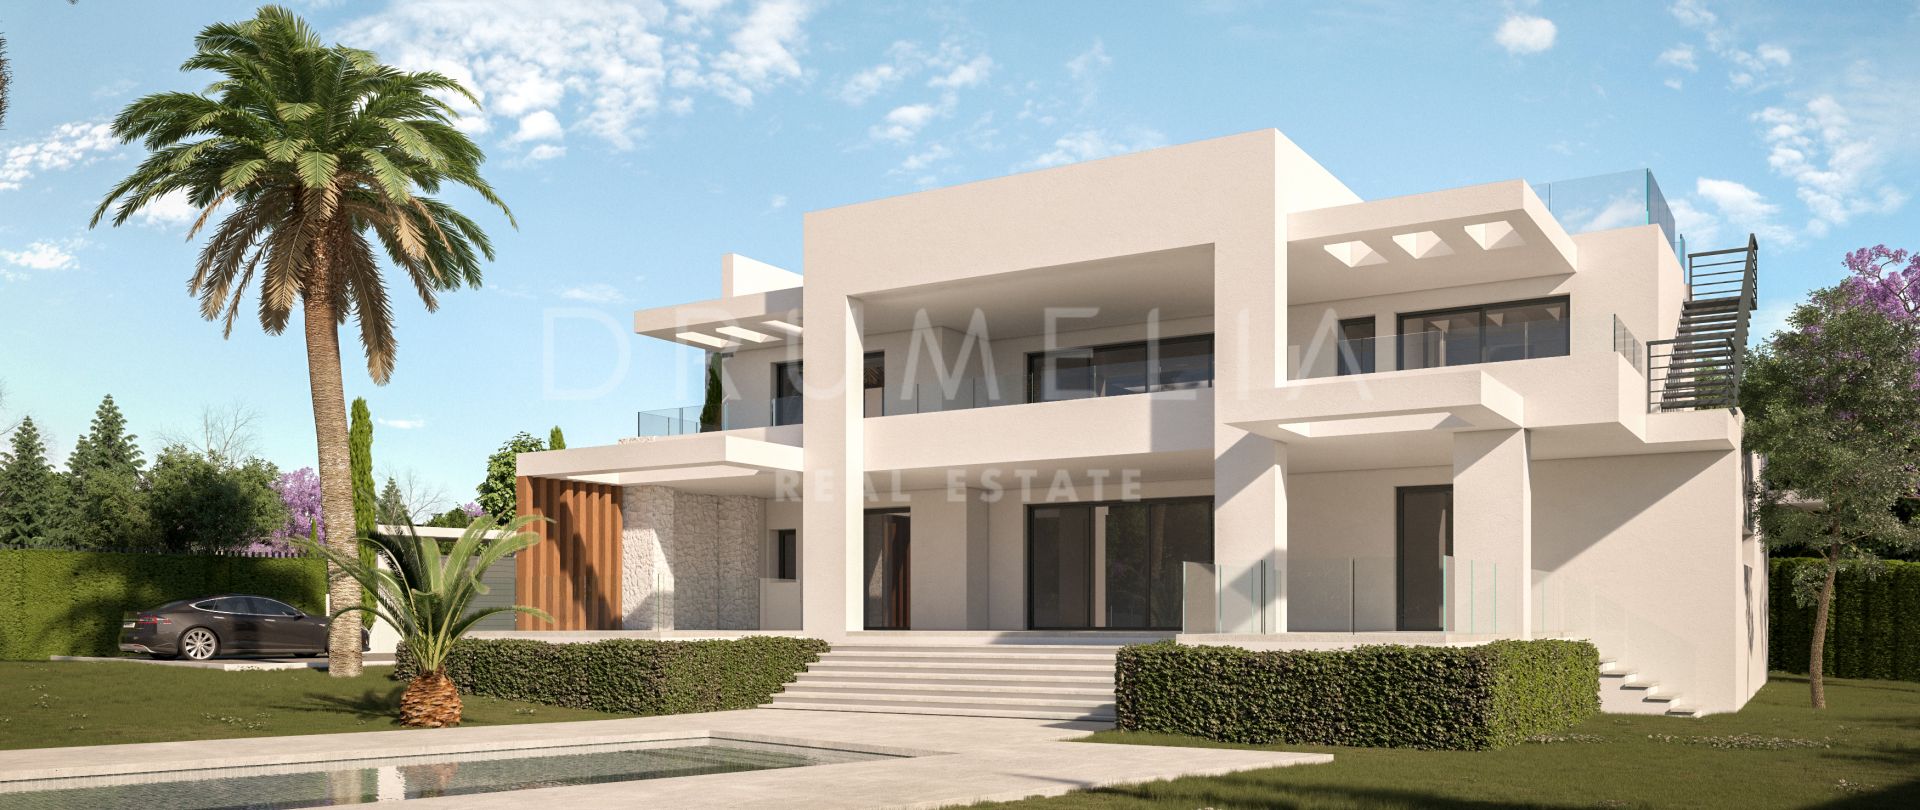 Ny modern strandvilla med havsutsikt och separat lägenhet, Marbella Öst